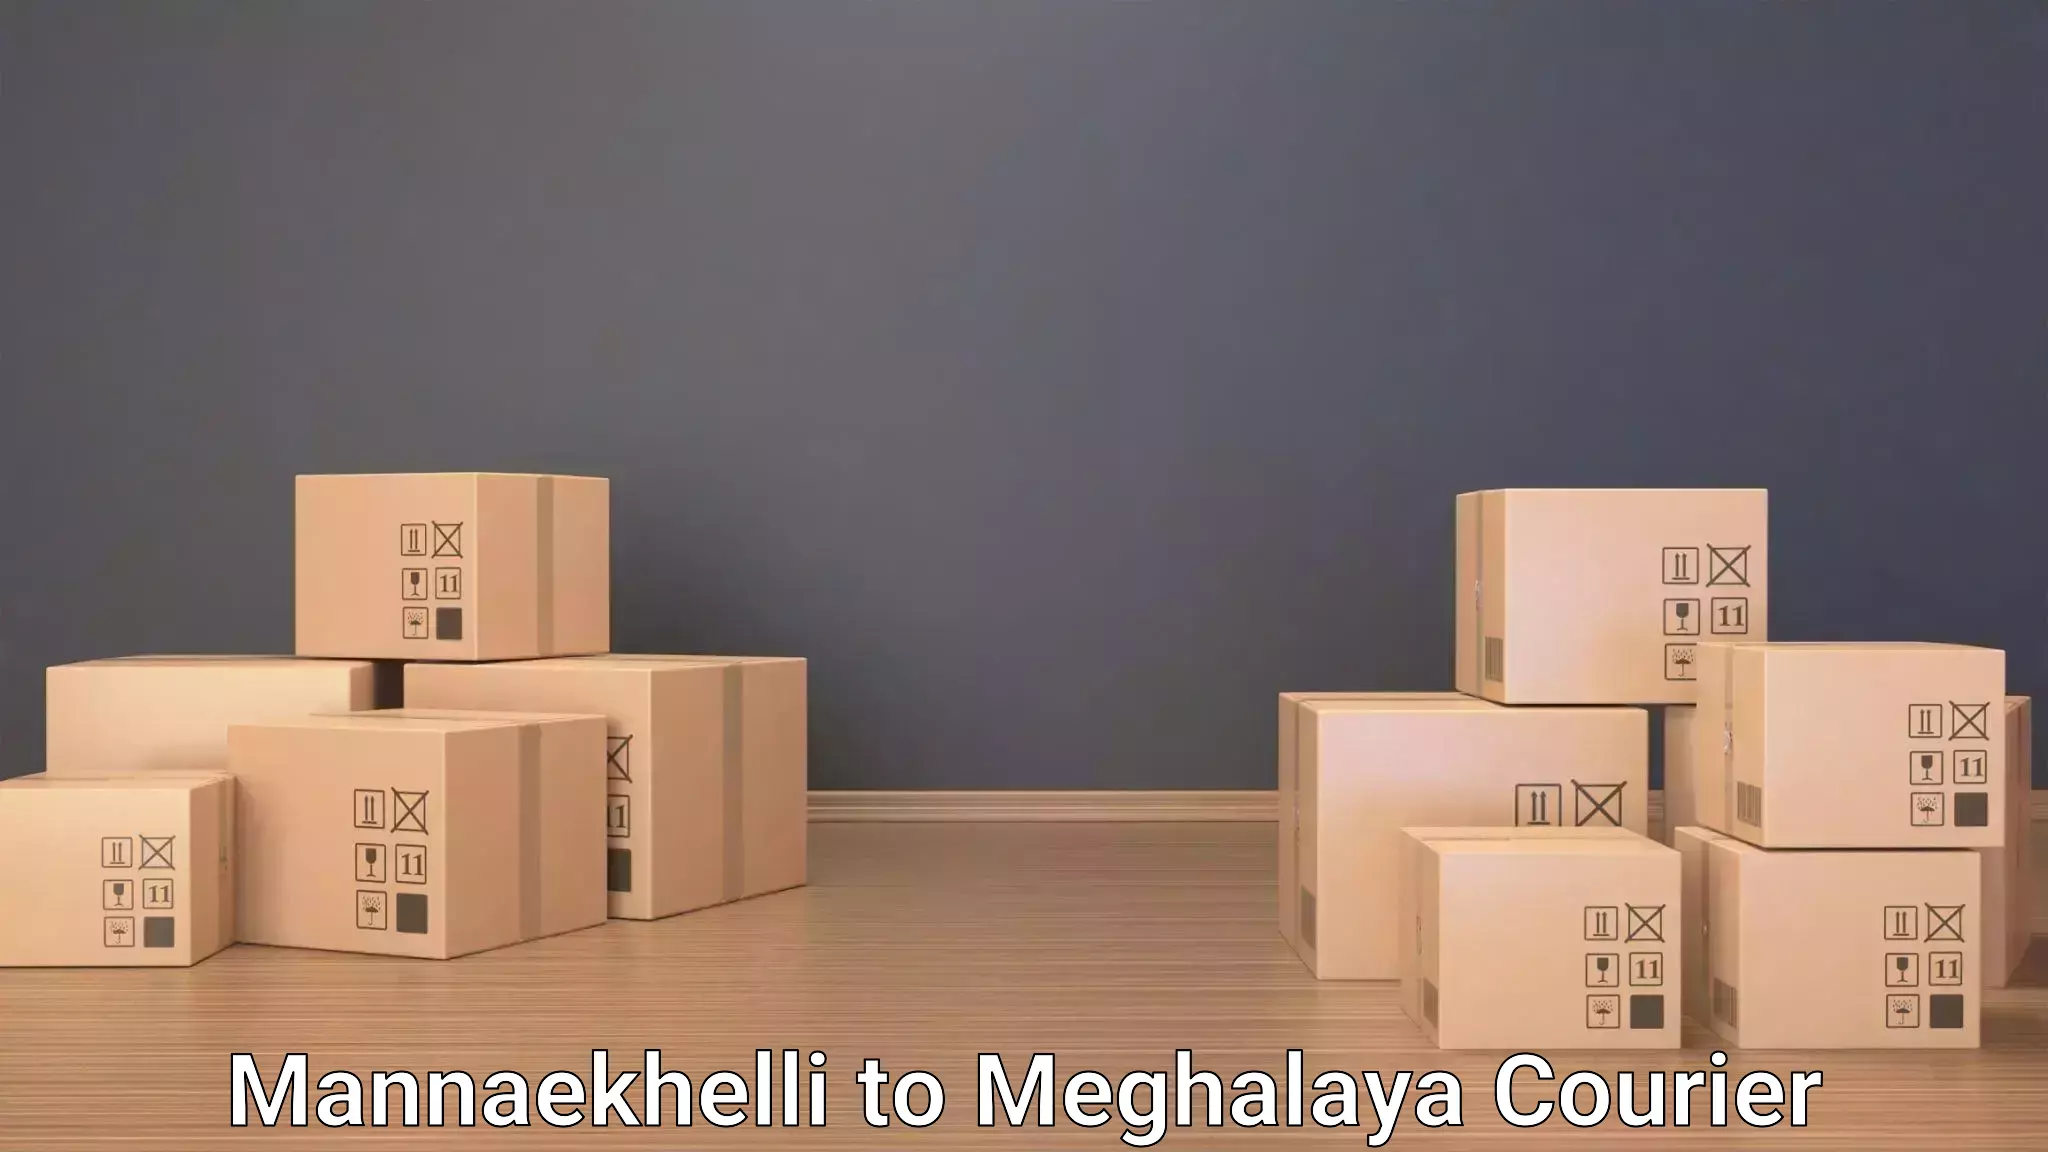 Baggage transport updates Mannaekhelli to NIT Meghalaya